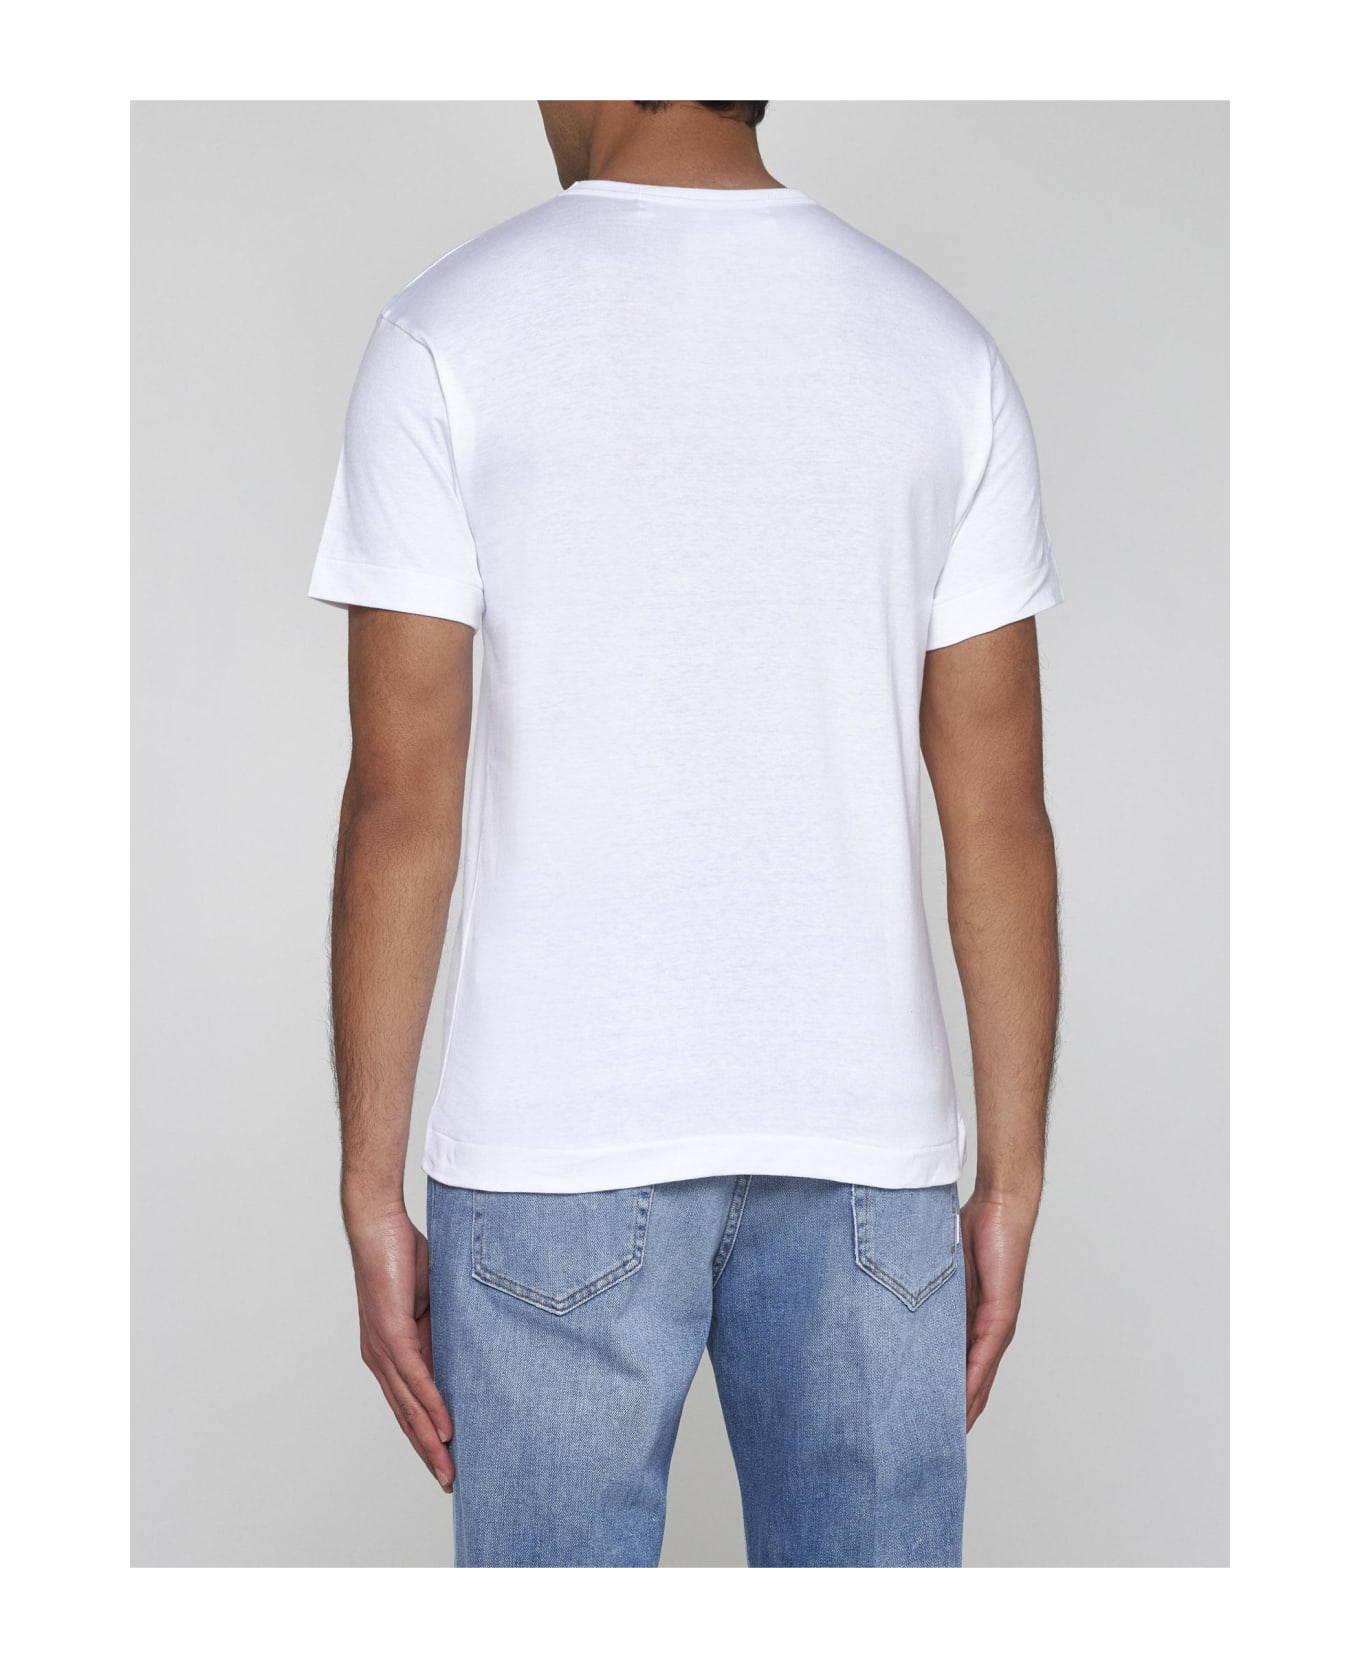 Comme des Garçons Heart Patch Cotton T-shirt - White シャツ